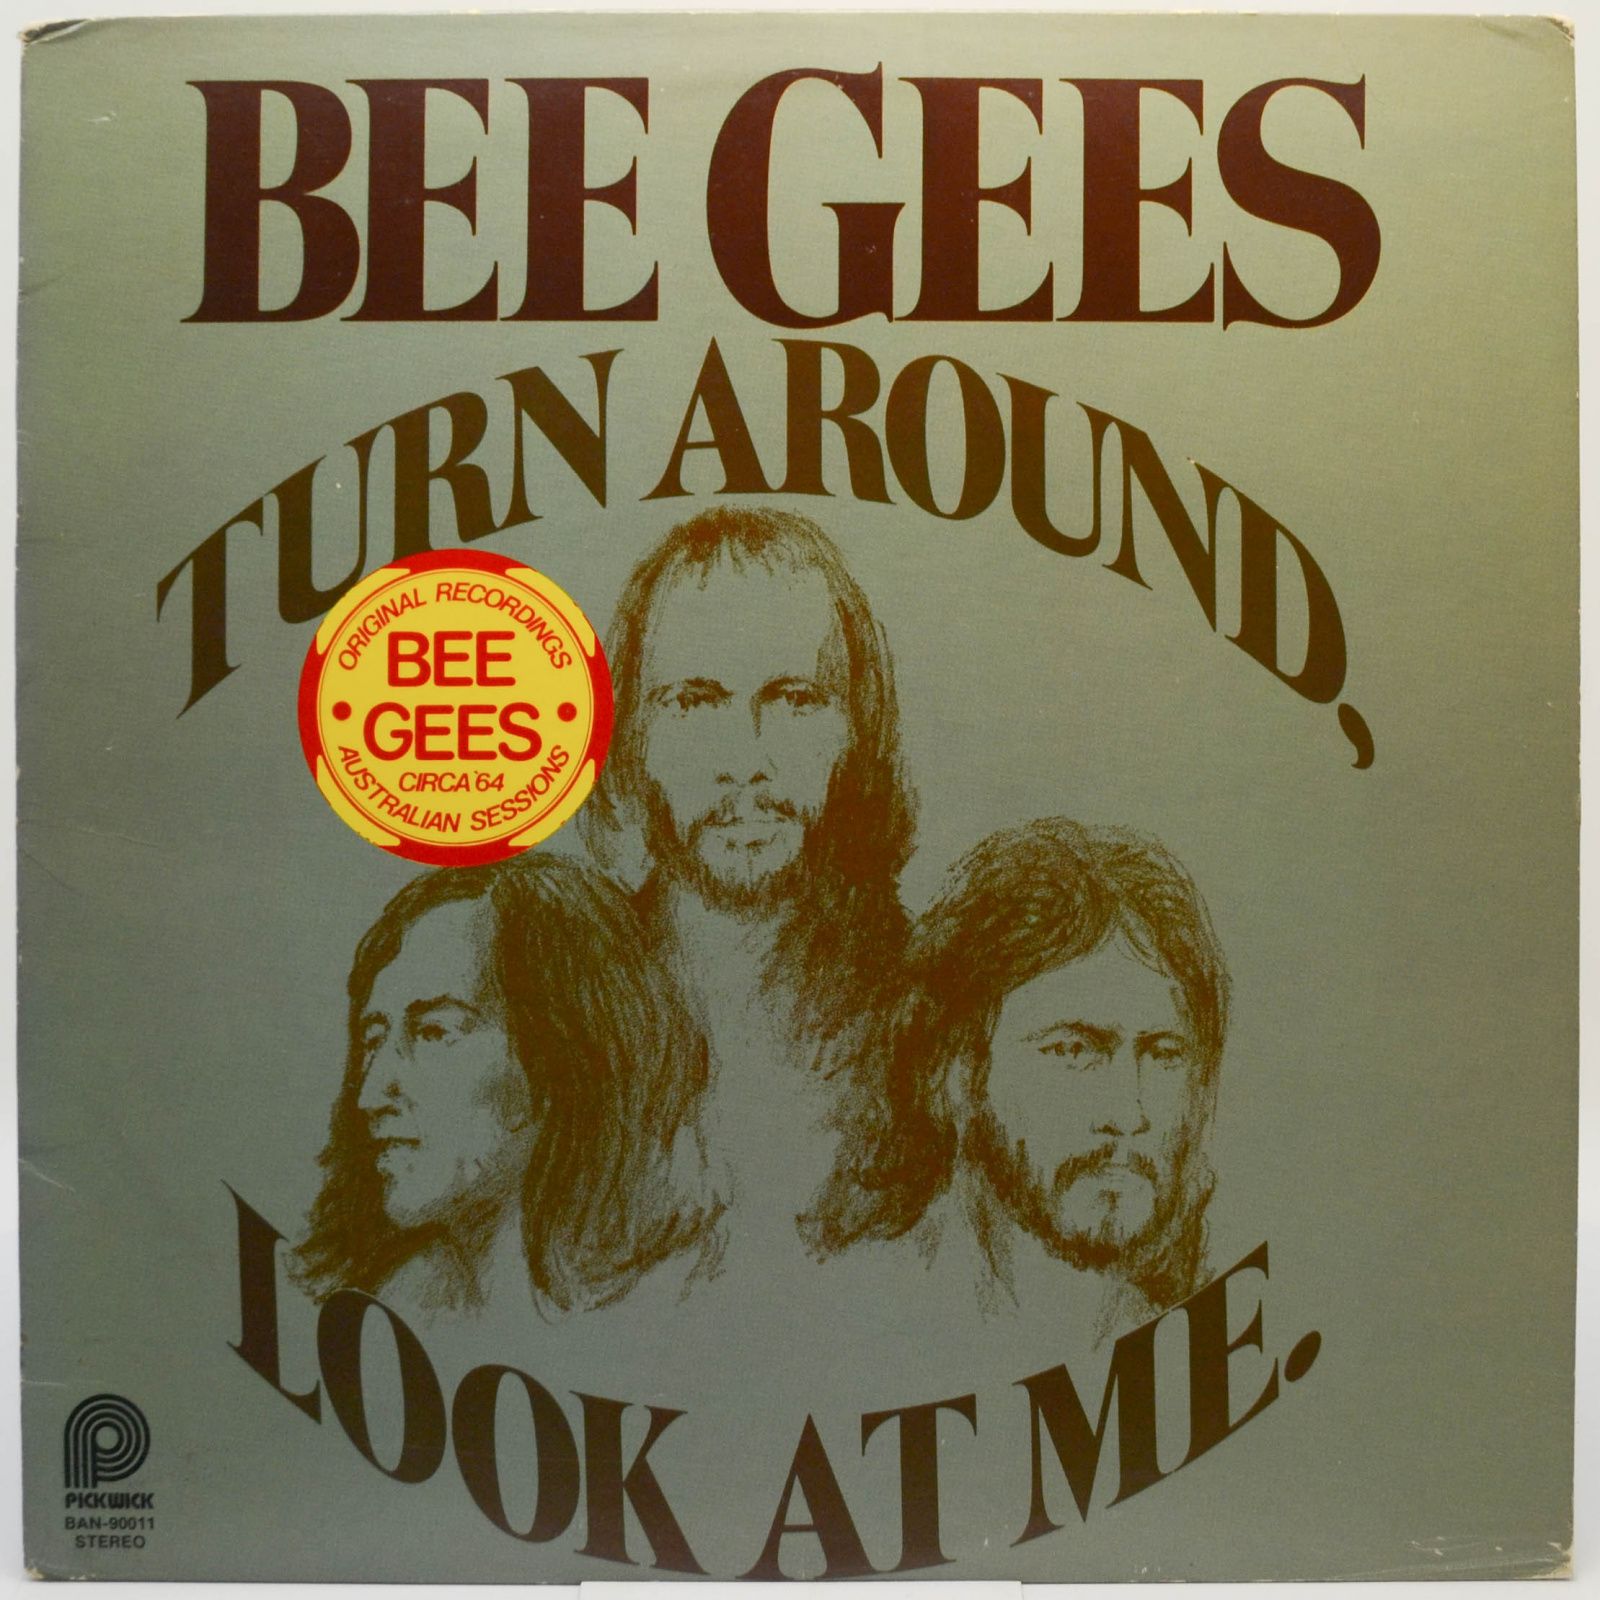 Bee Gees — Turn Around, Look At Me, 1978